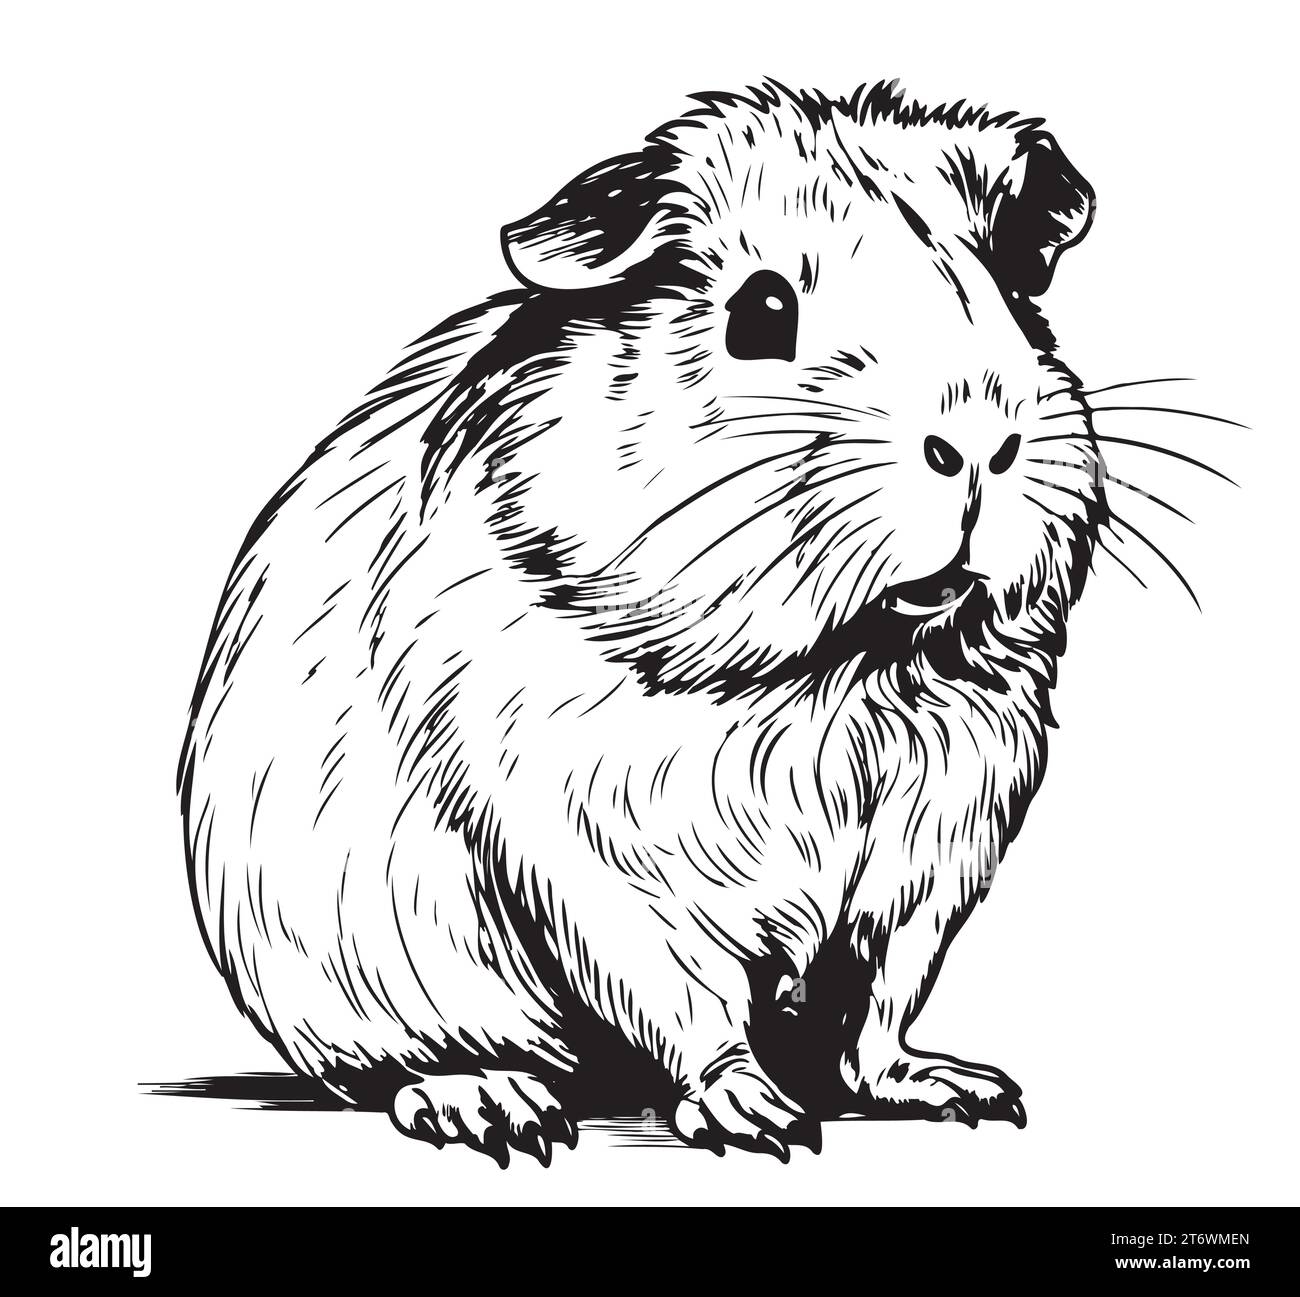 Plump nettes Meerschweinchen, Skizze Vektorgrafiken schwarz-weiß Zeichnung Vektorillustration Stock Vektor